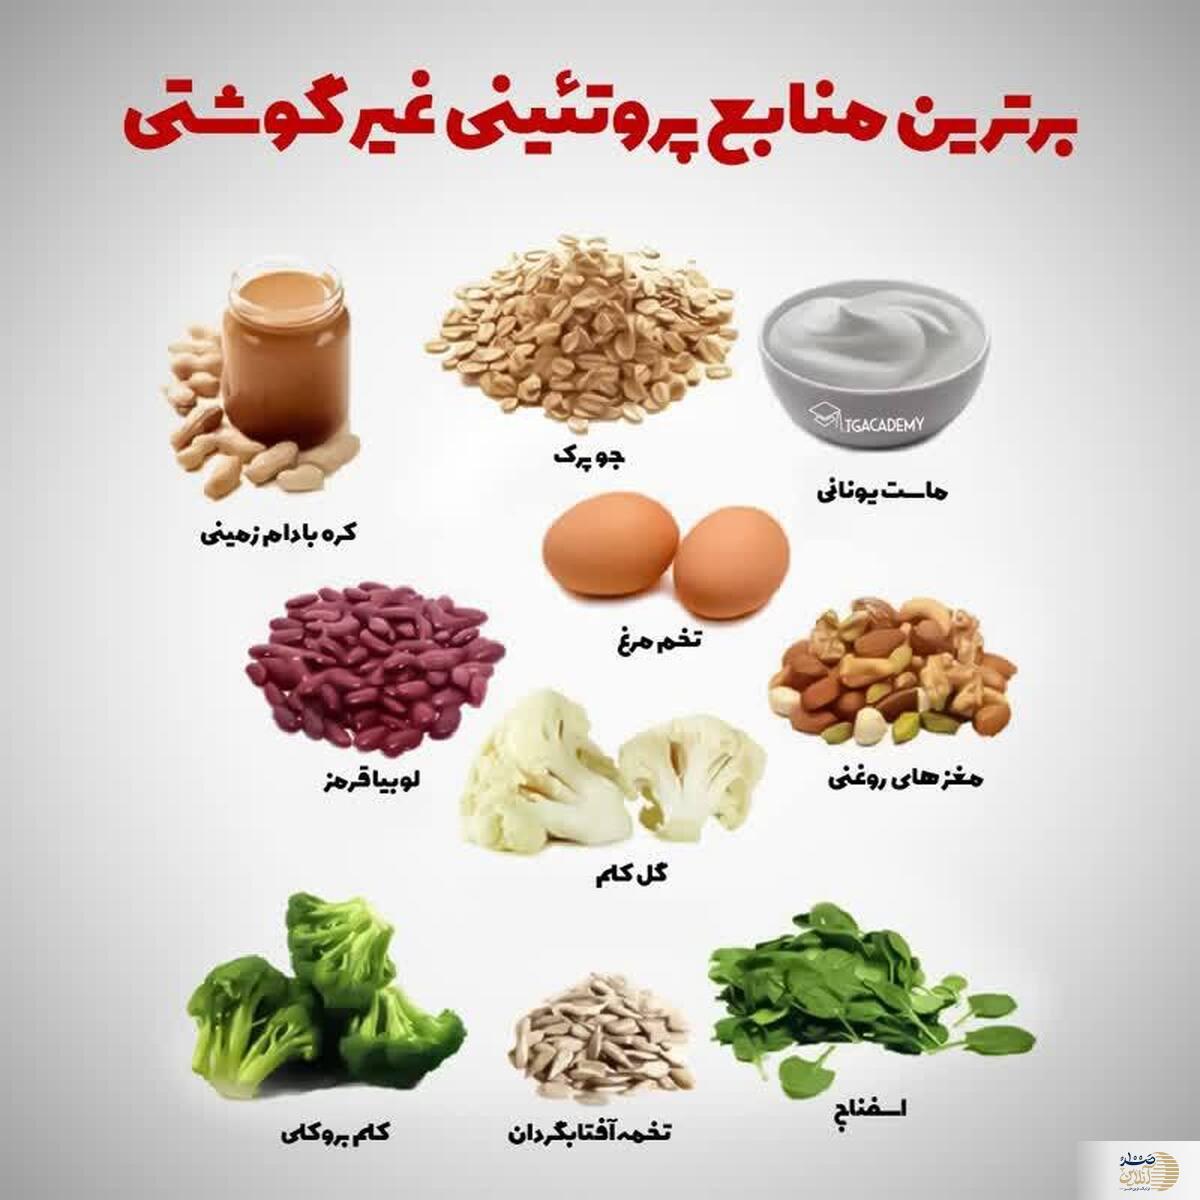 مصرف این گیاهان در ناشتا چندین برابر خوردن گوشت برای بدن موثر است + تنظیم قند و فشار خون و صفرشویی کبد و کلیه